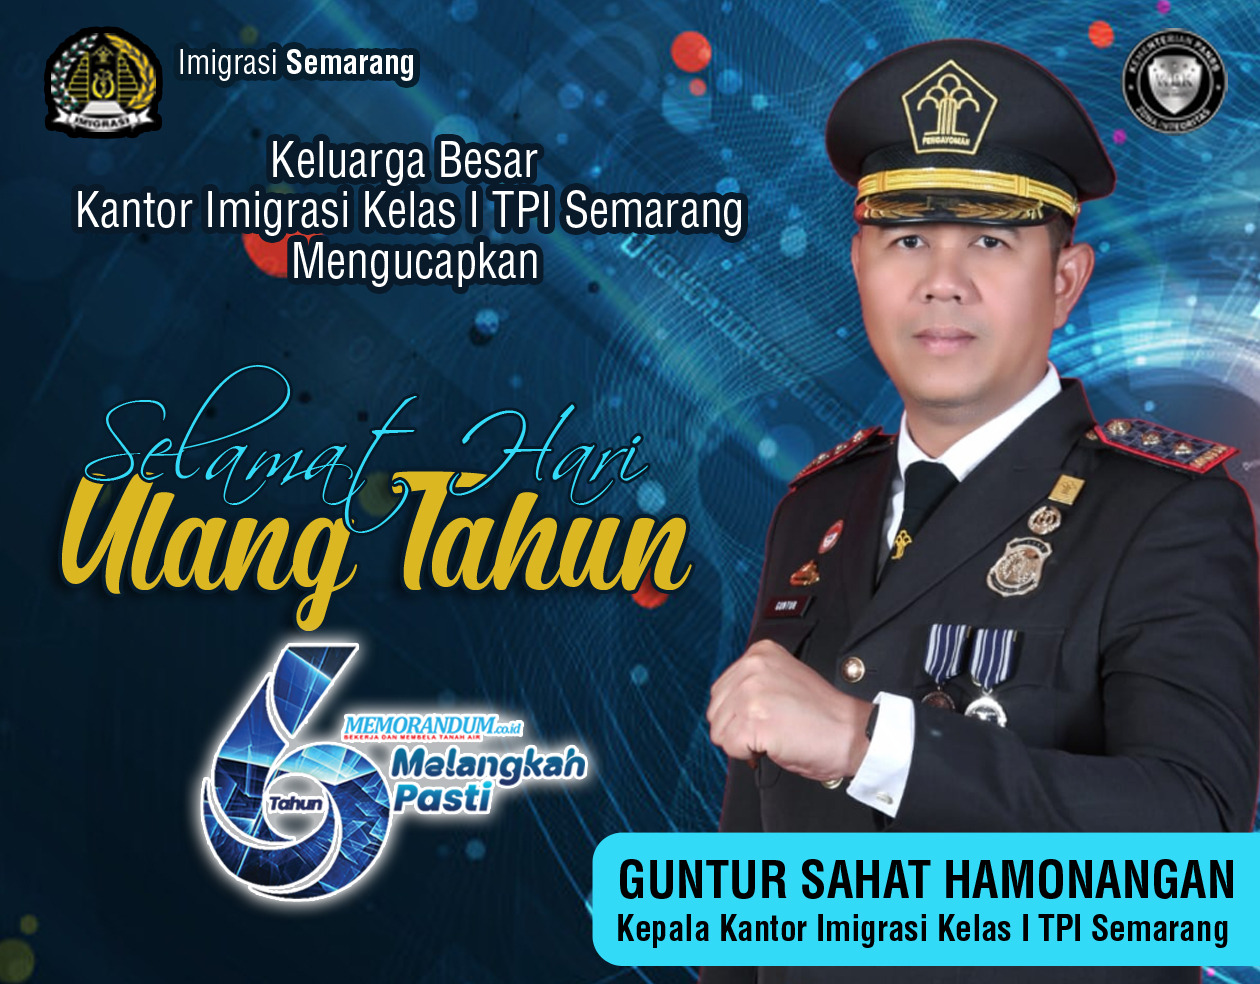 Kepala Kantor Imigrasi Kelas I TPI Semarang Guntur Sahat Hamonangan Mengucapkan, Selamat Ulang Tahun yang Ke-6